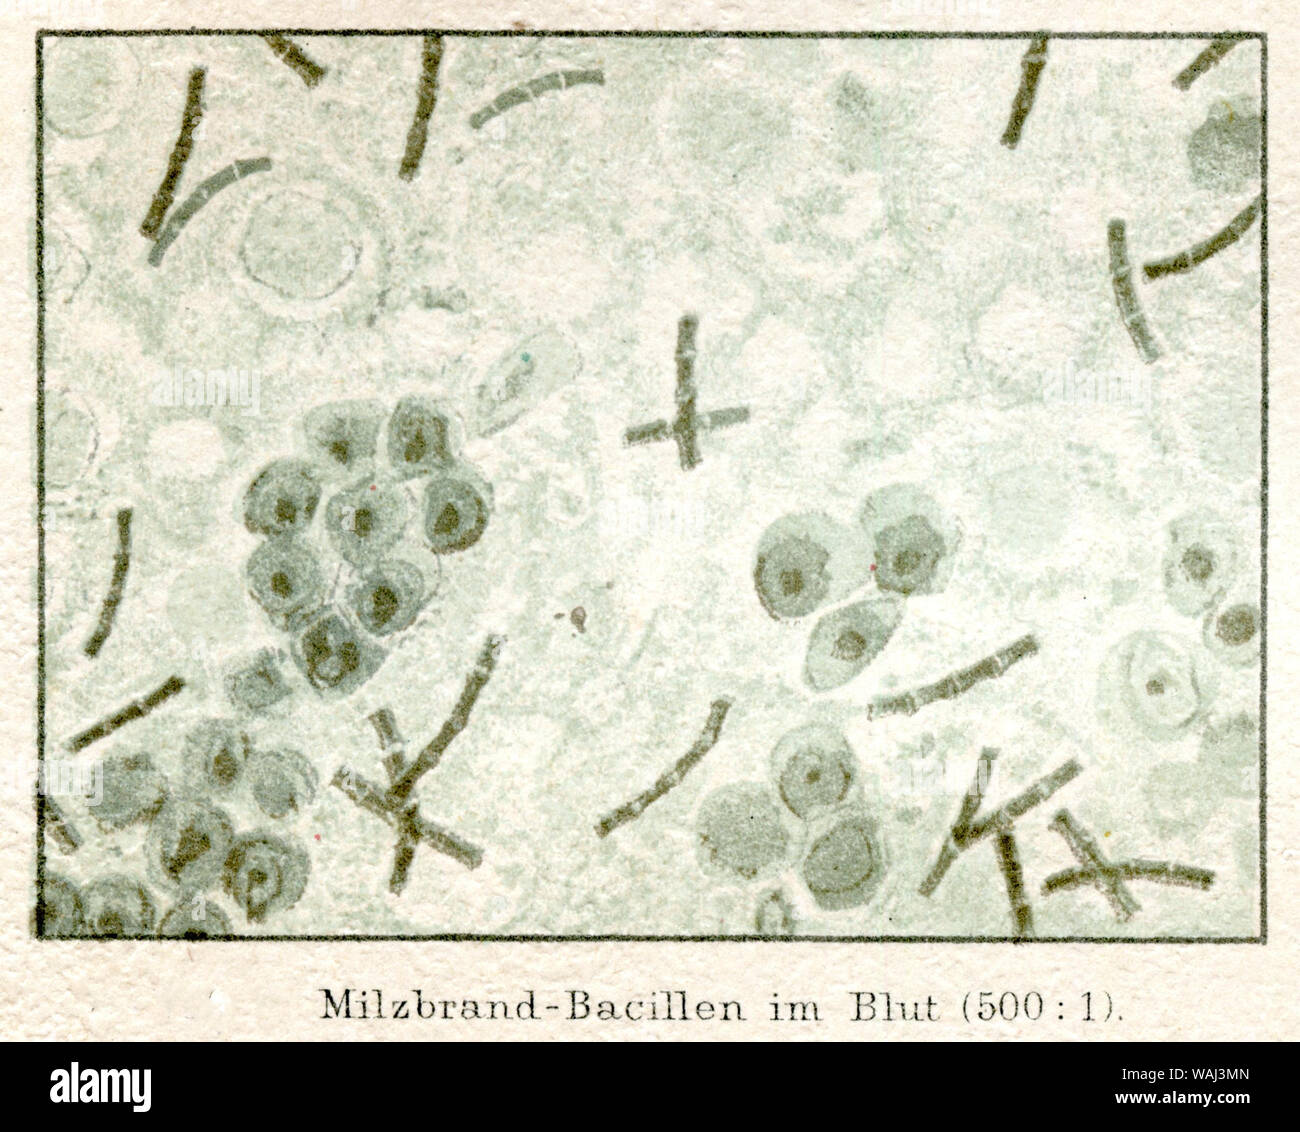 Anthrax Bakterien im Blut eines Patienten unter dem Mikroskop (500:1). (Enzyklopädie, 1885) Stockfoto